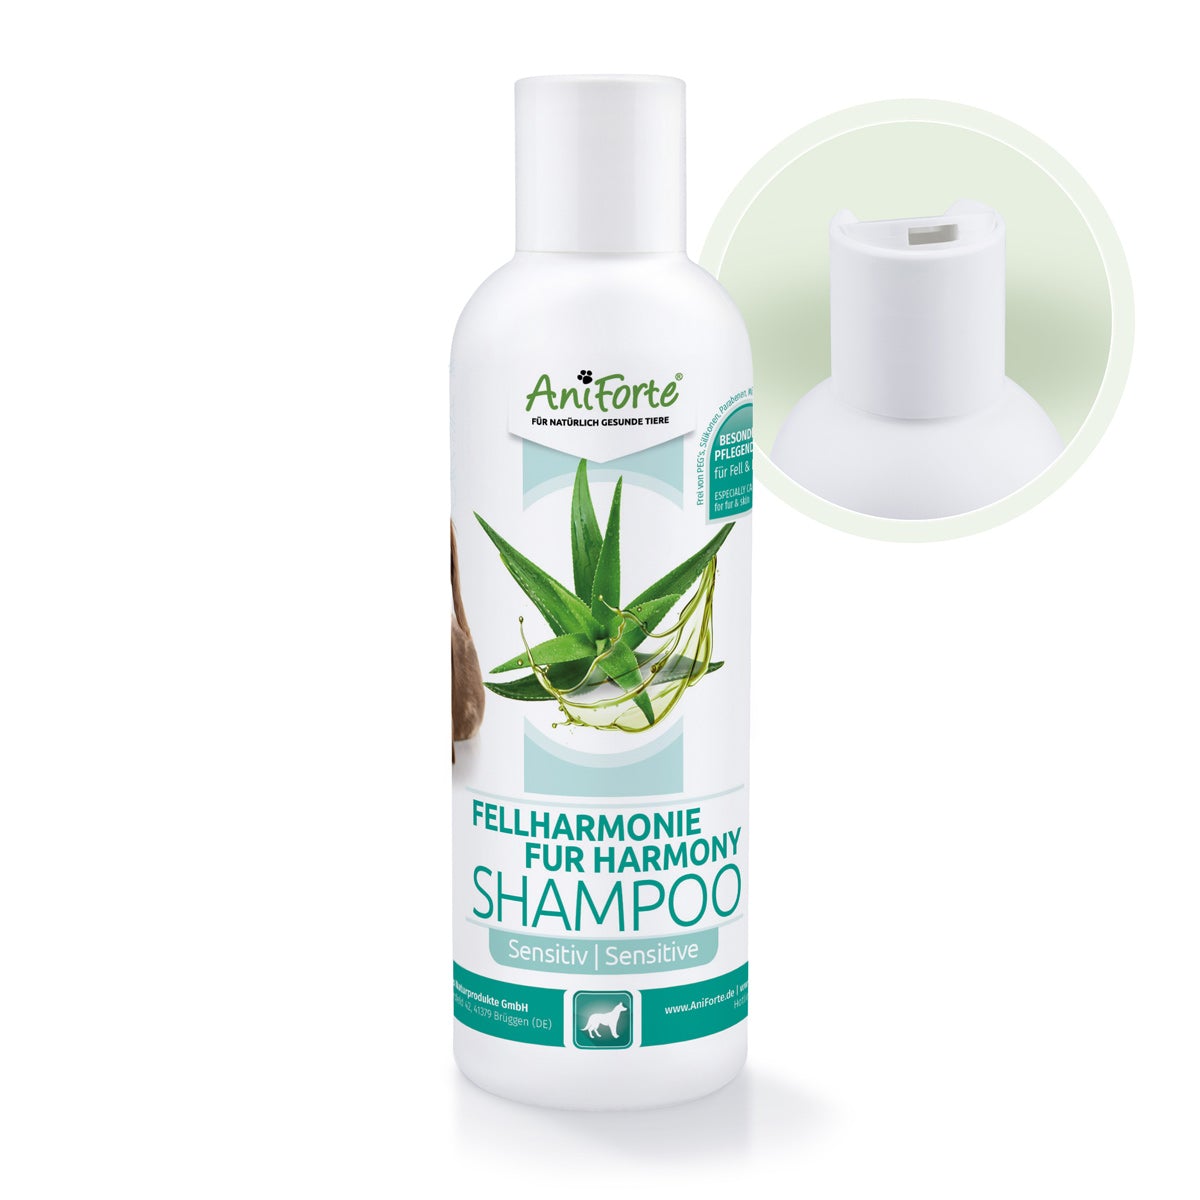 Fellharmonie Shampoo Sensitiv - AniForte